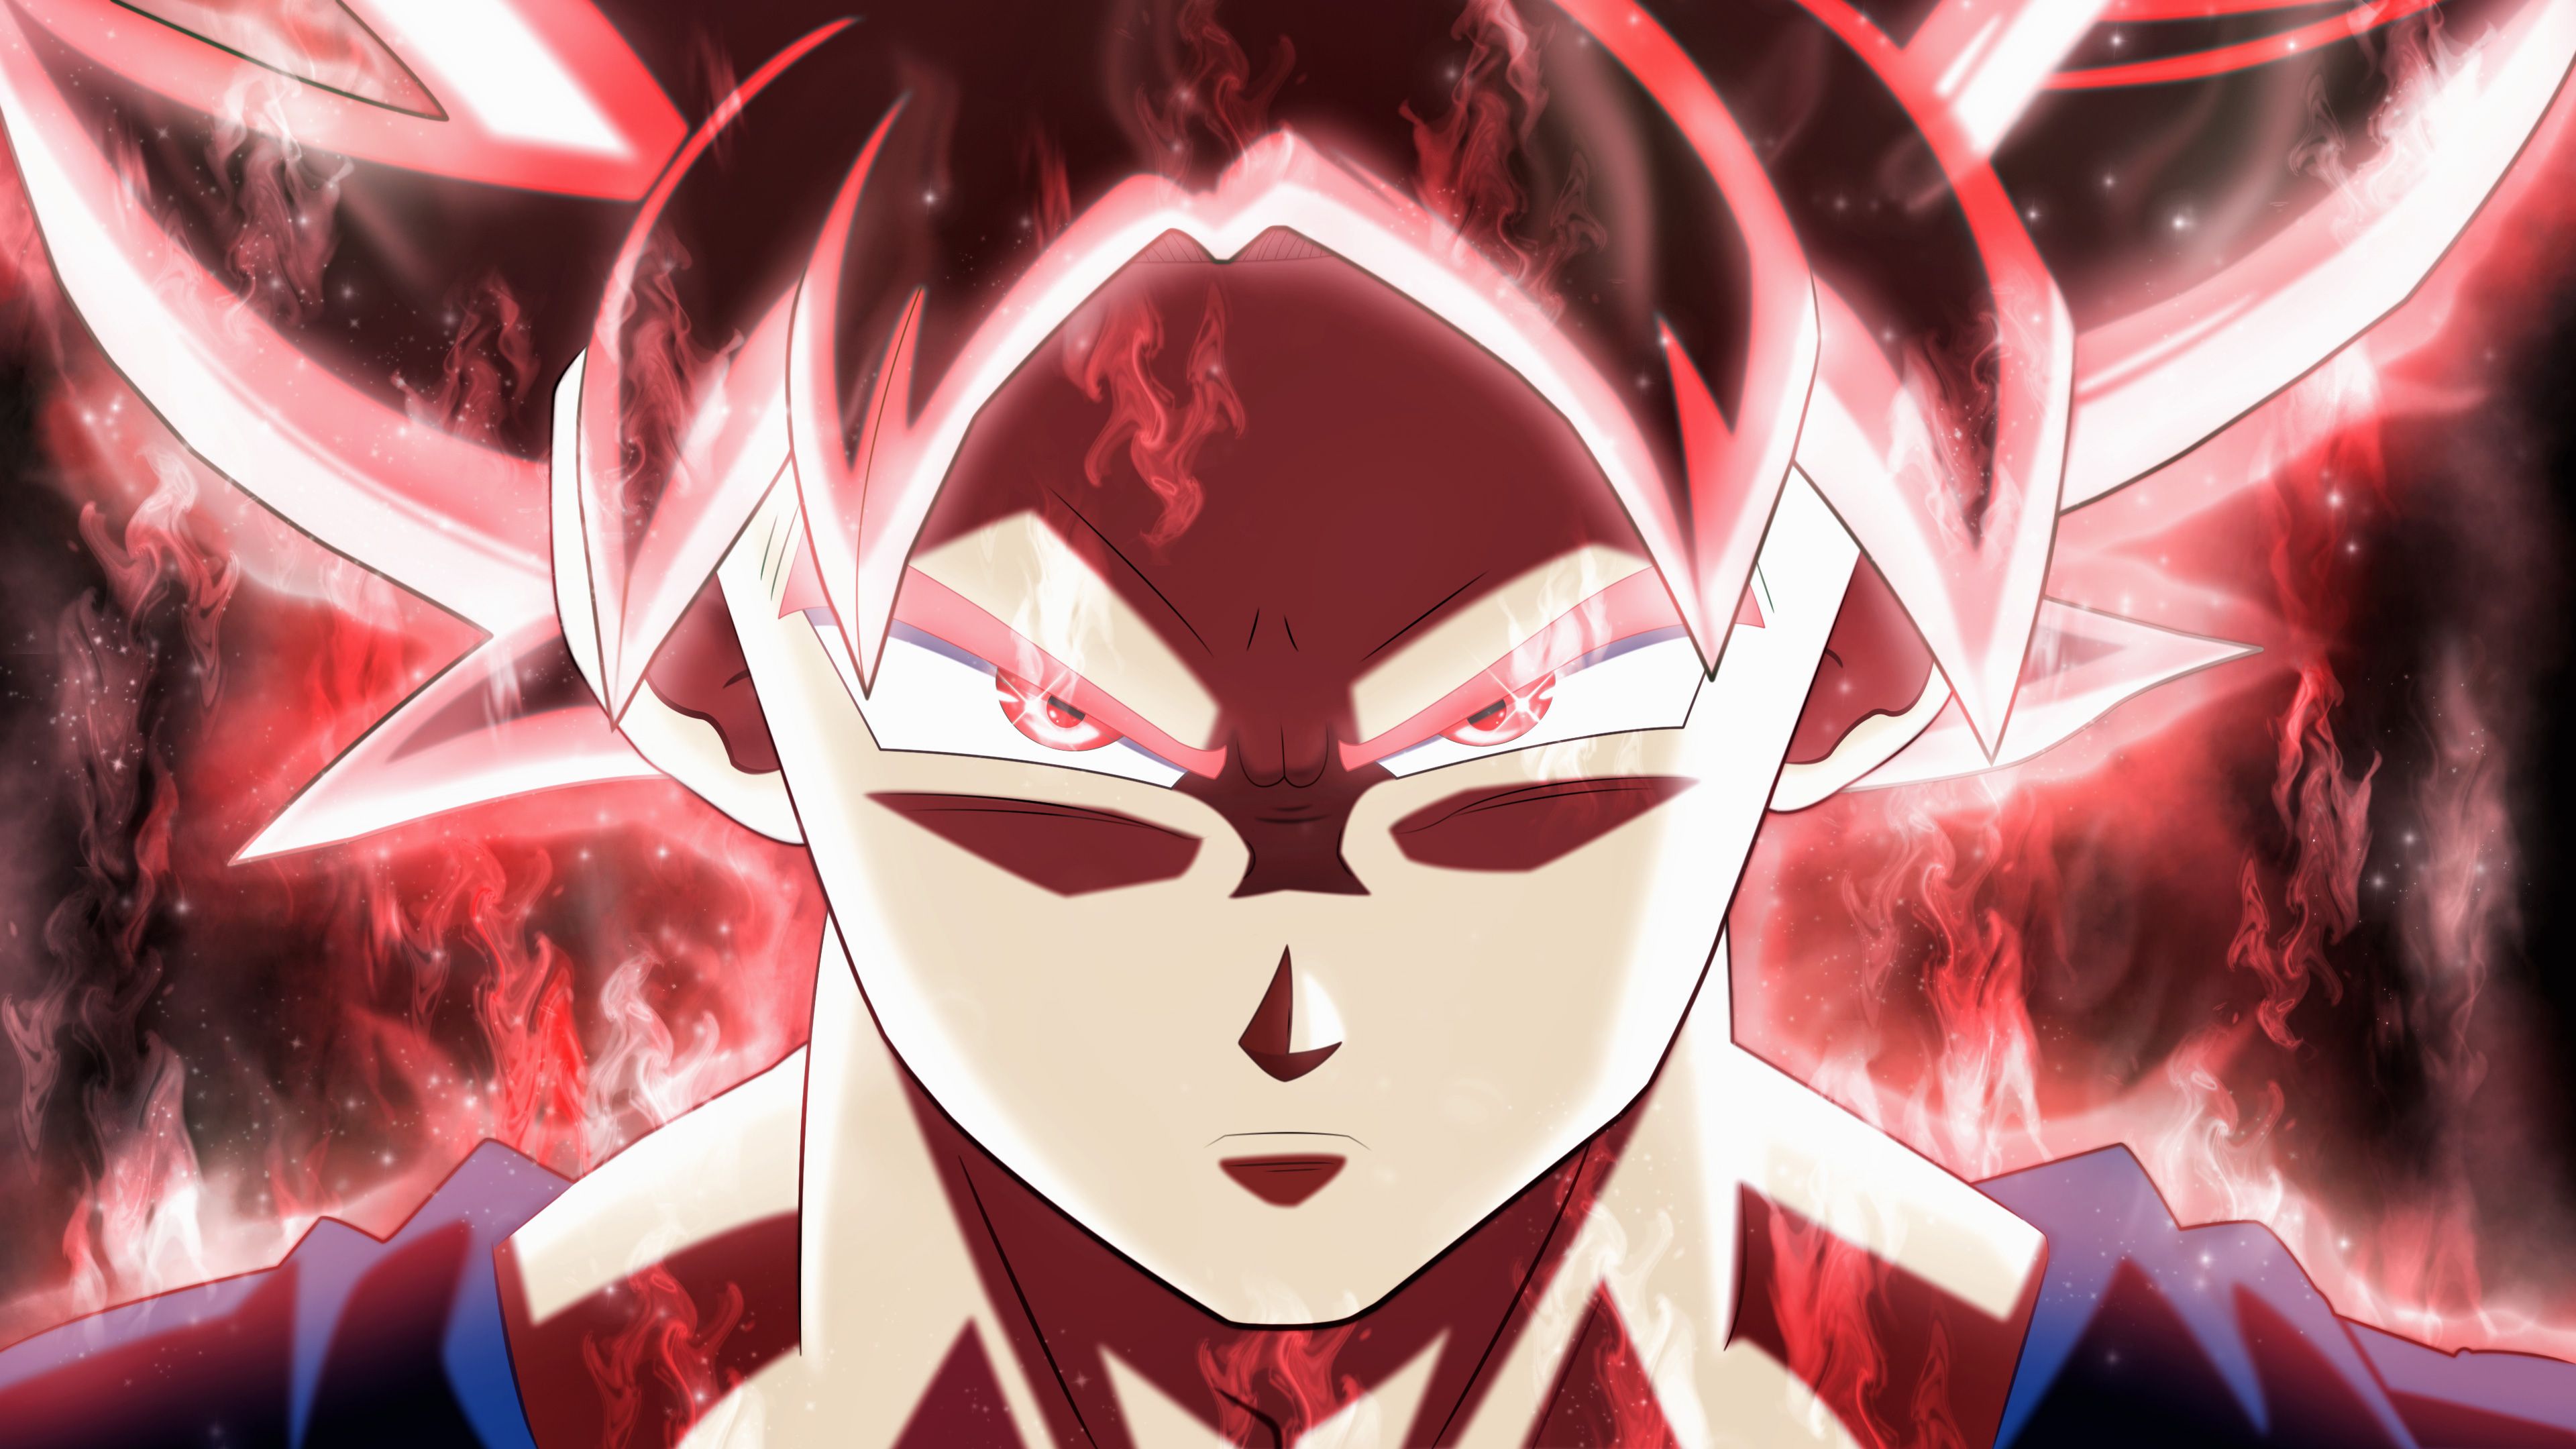 Free download Cool Goku Wallpaper